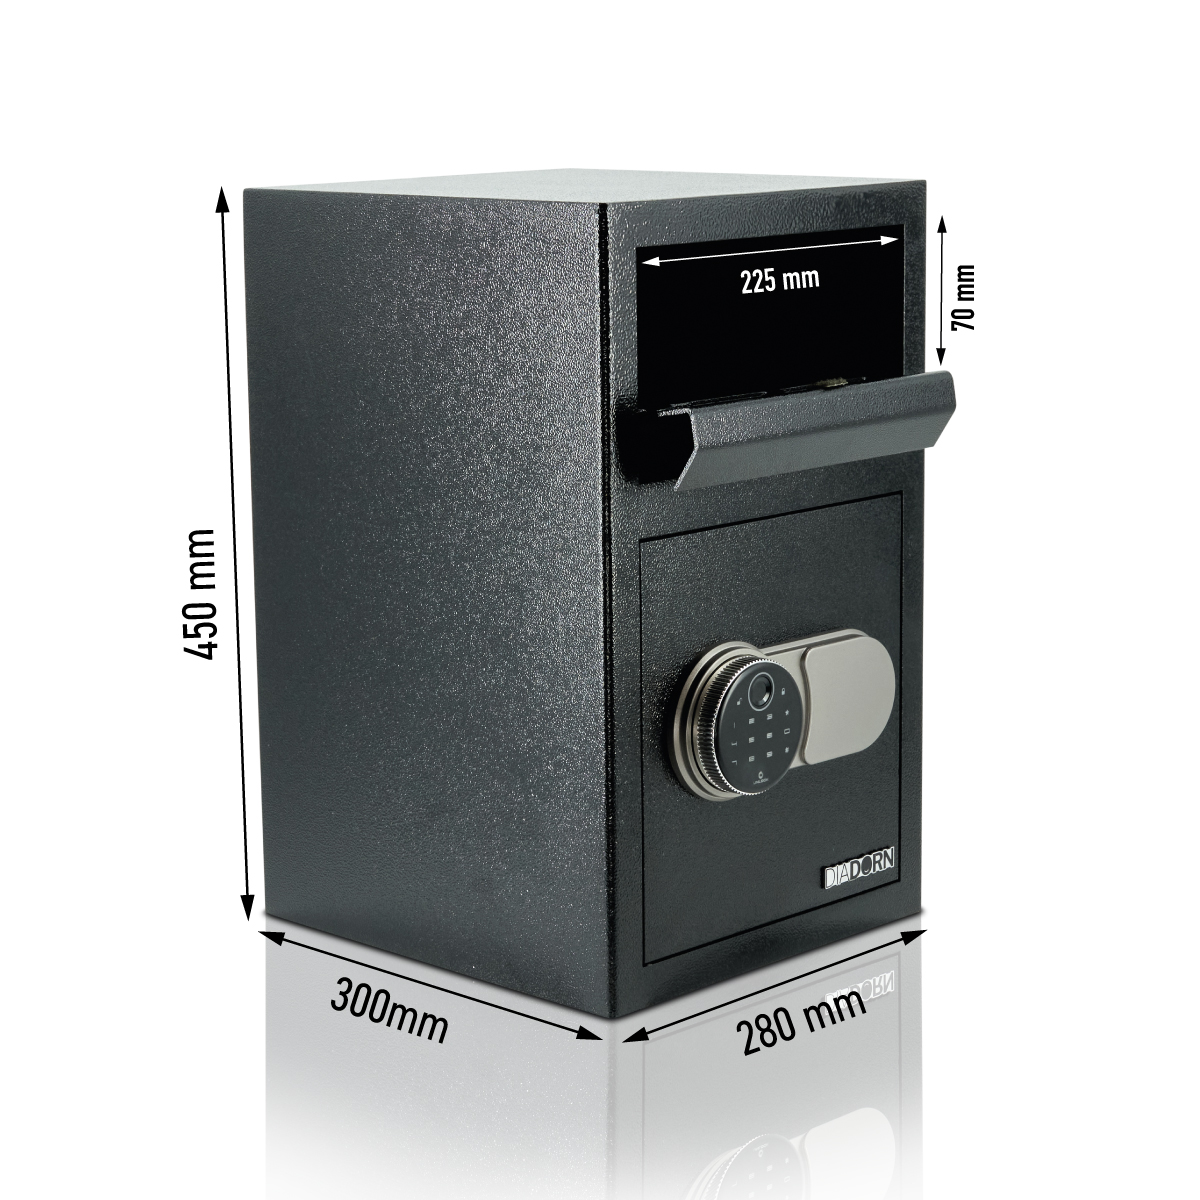 Cofre de depósito com gaveta de depósito com fechadura de código PIN com impressão digital | Scanner de impressão digital